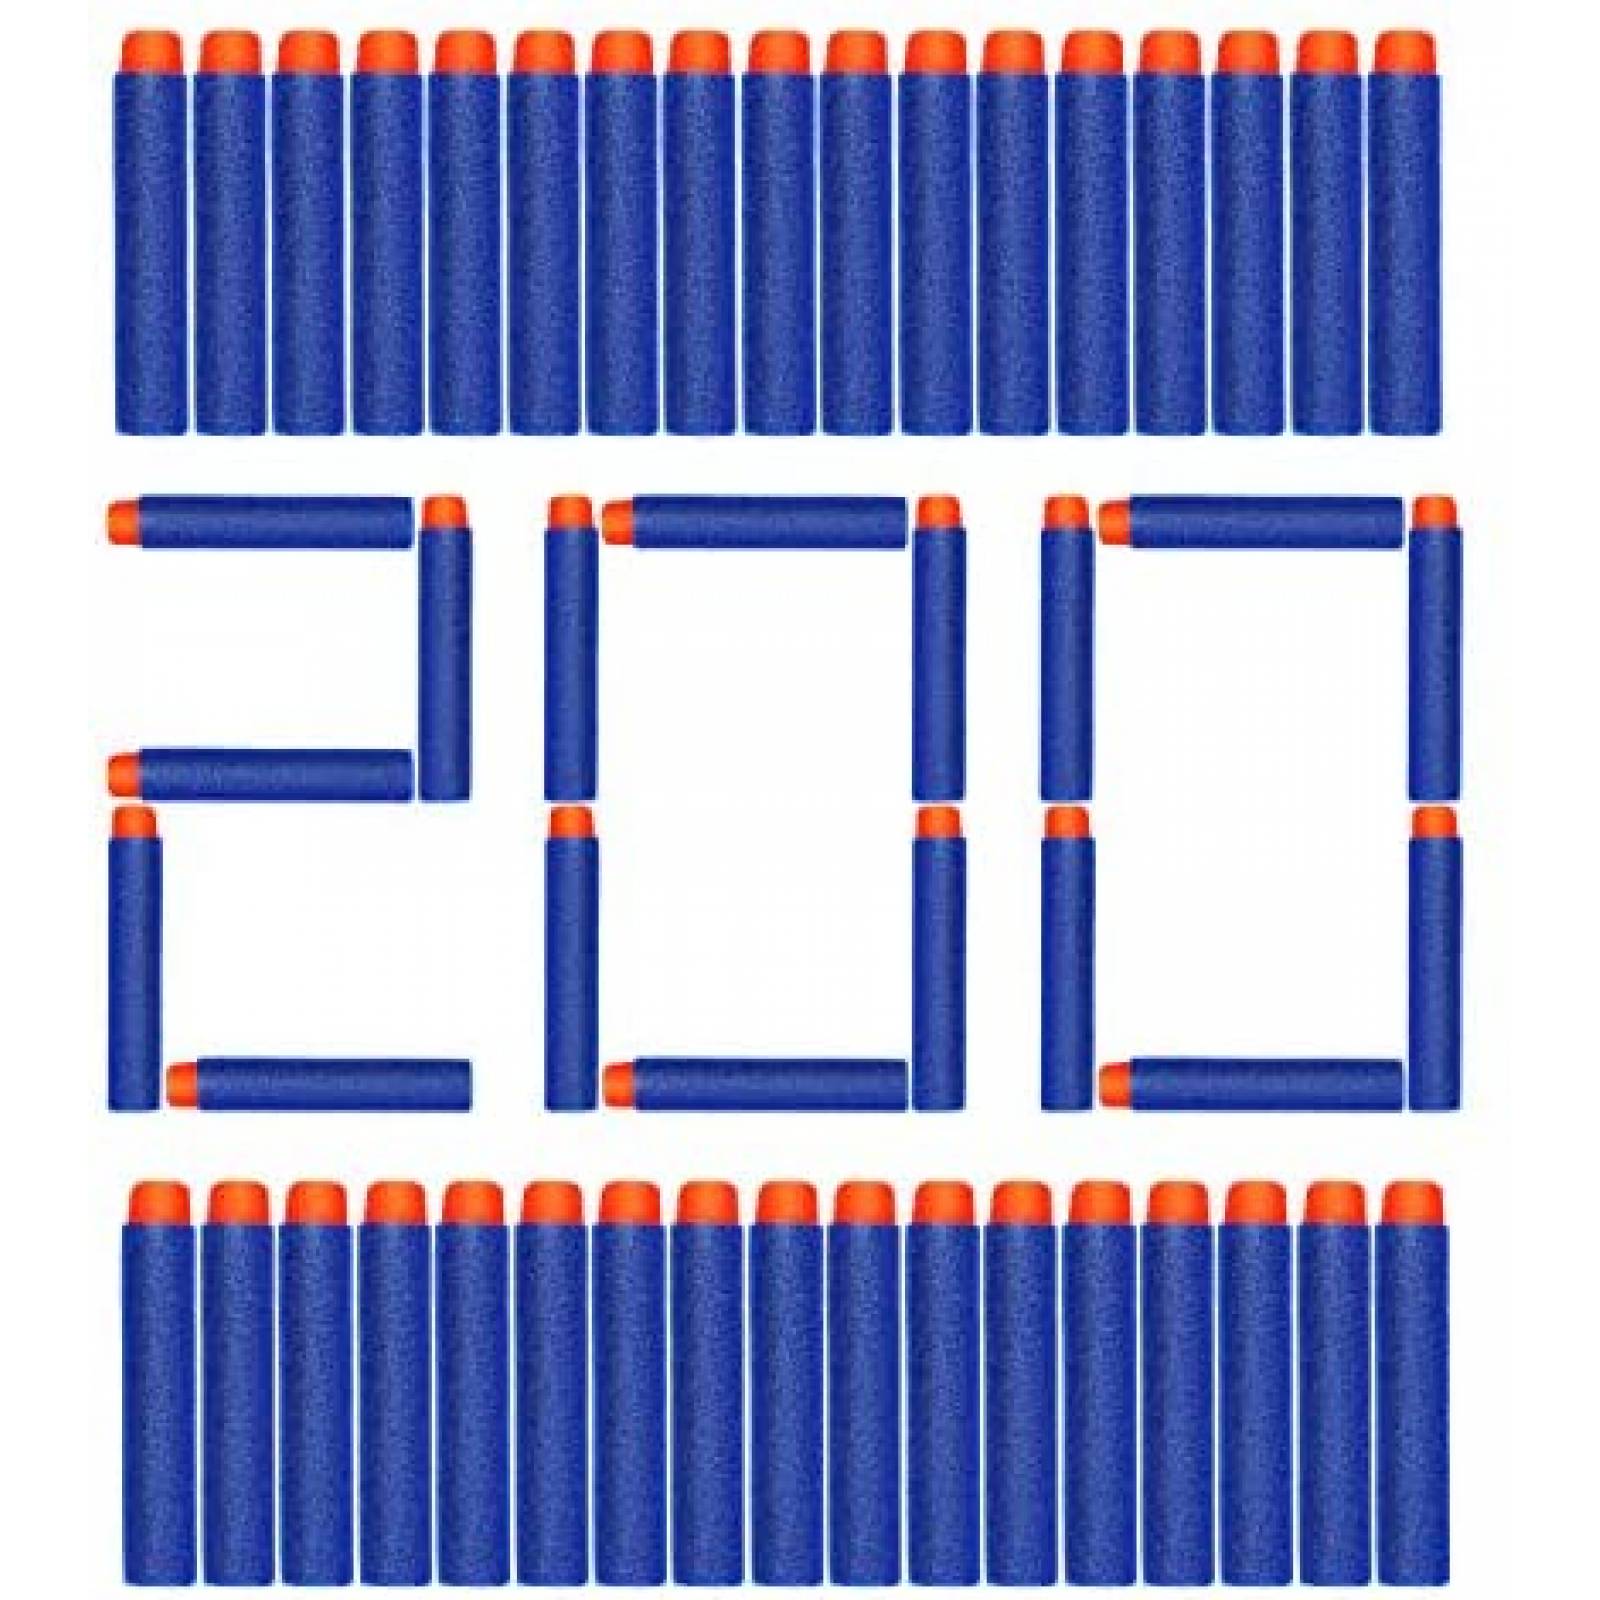 Repuesto de Dardos AUKND NERF Bullet Refill 200 pzs -Azul